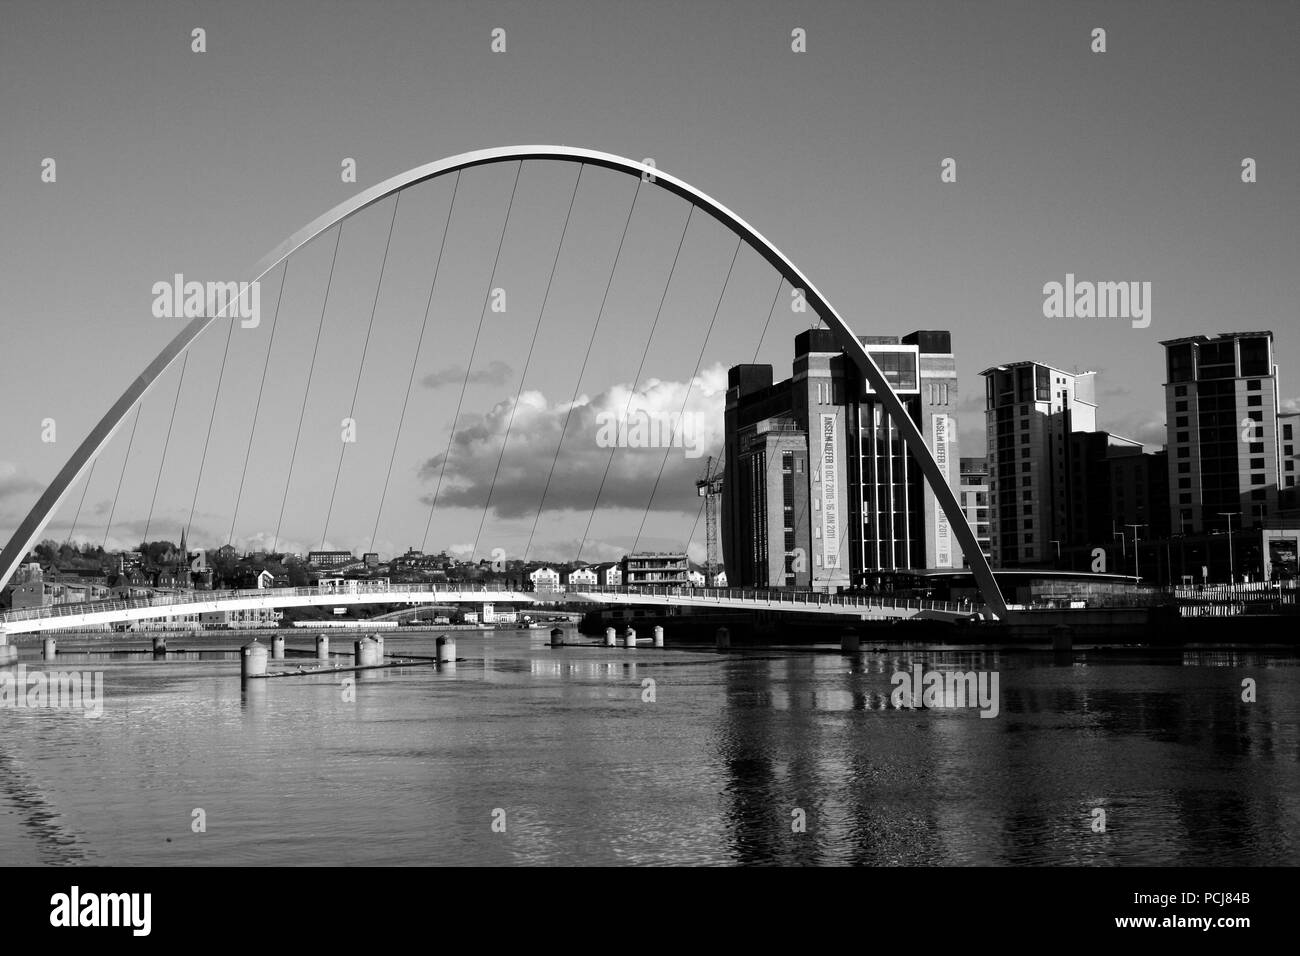 Newcastle Gateshead Millennium Bridge con el centro báltico de arte contemporáneo que se ve al fondo Foto de stock